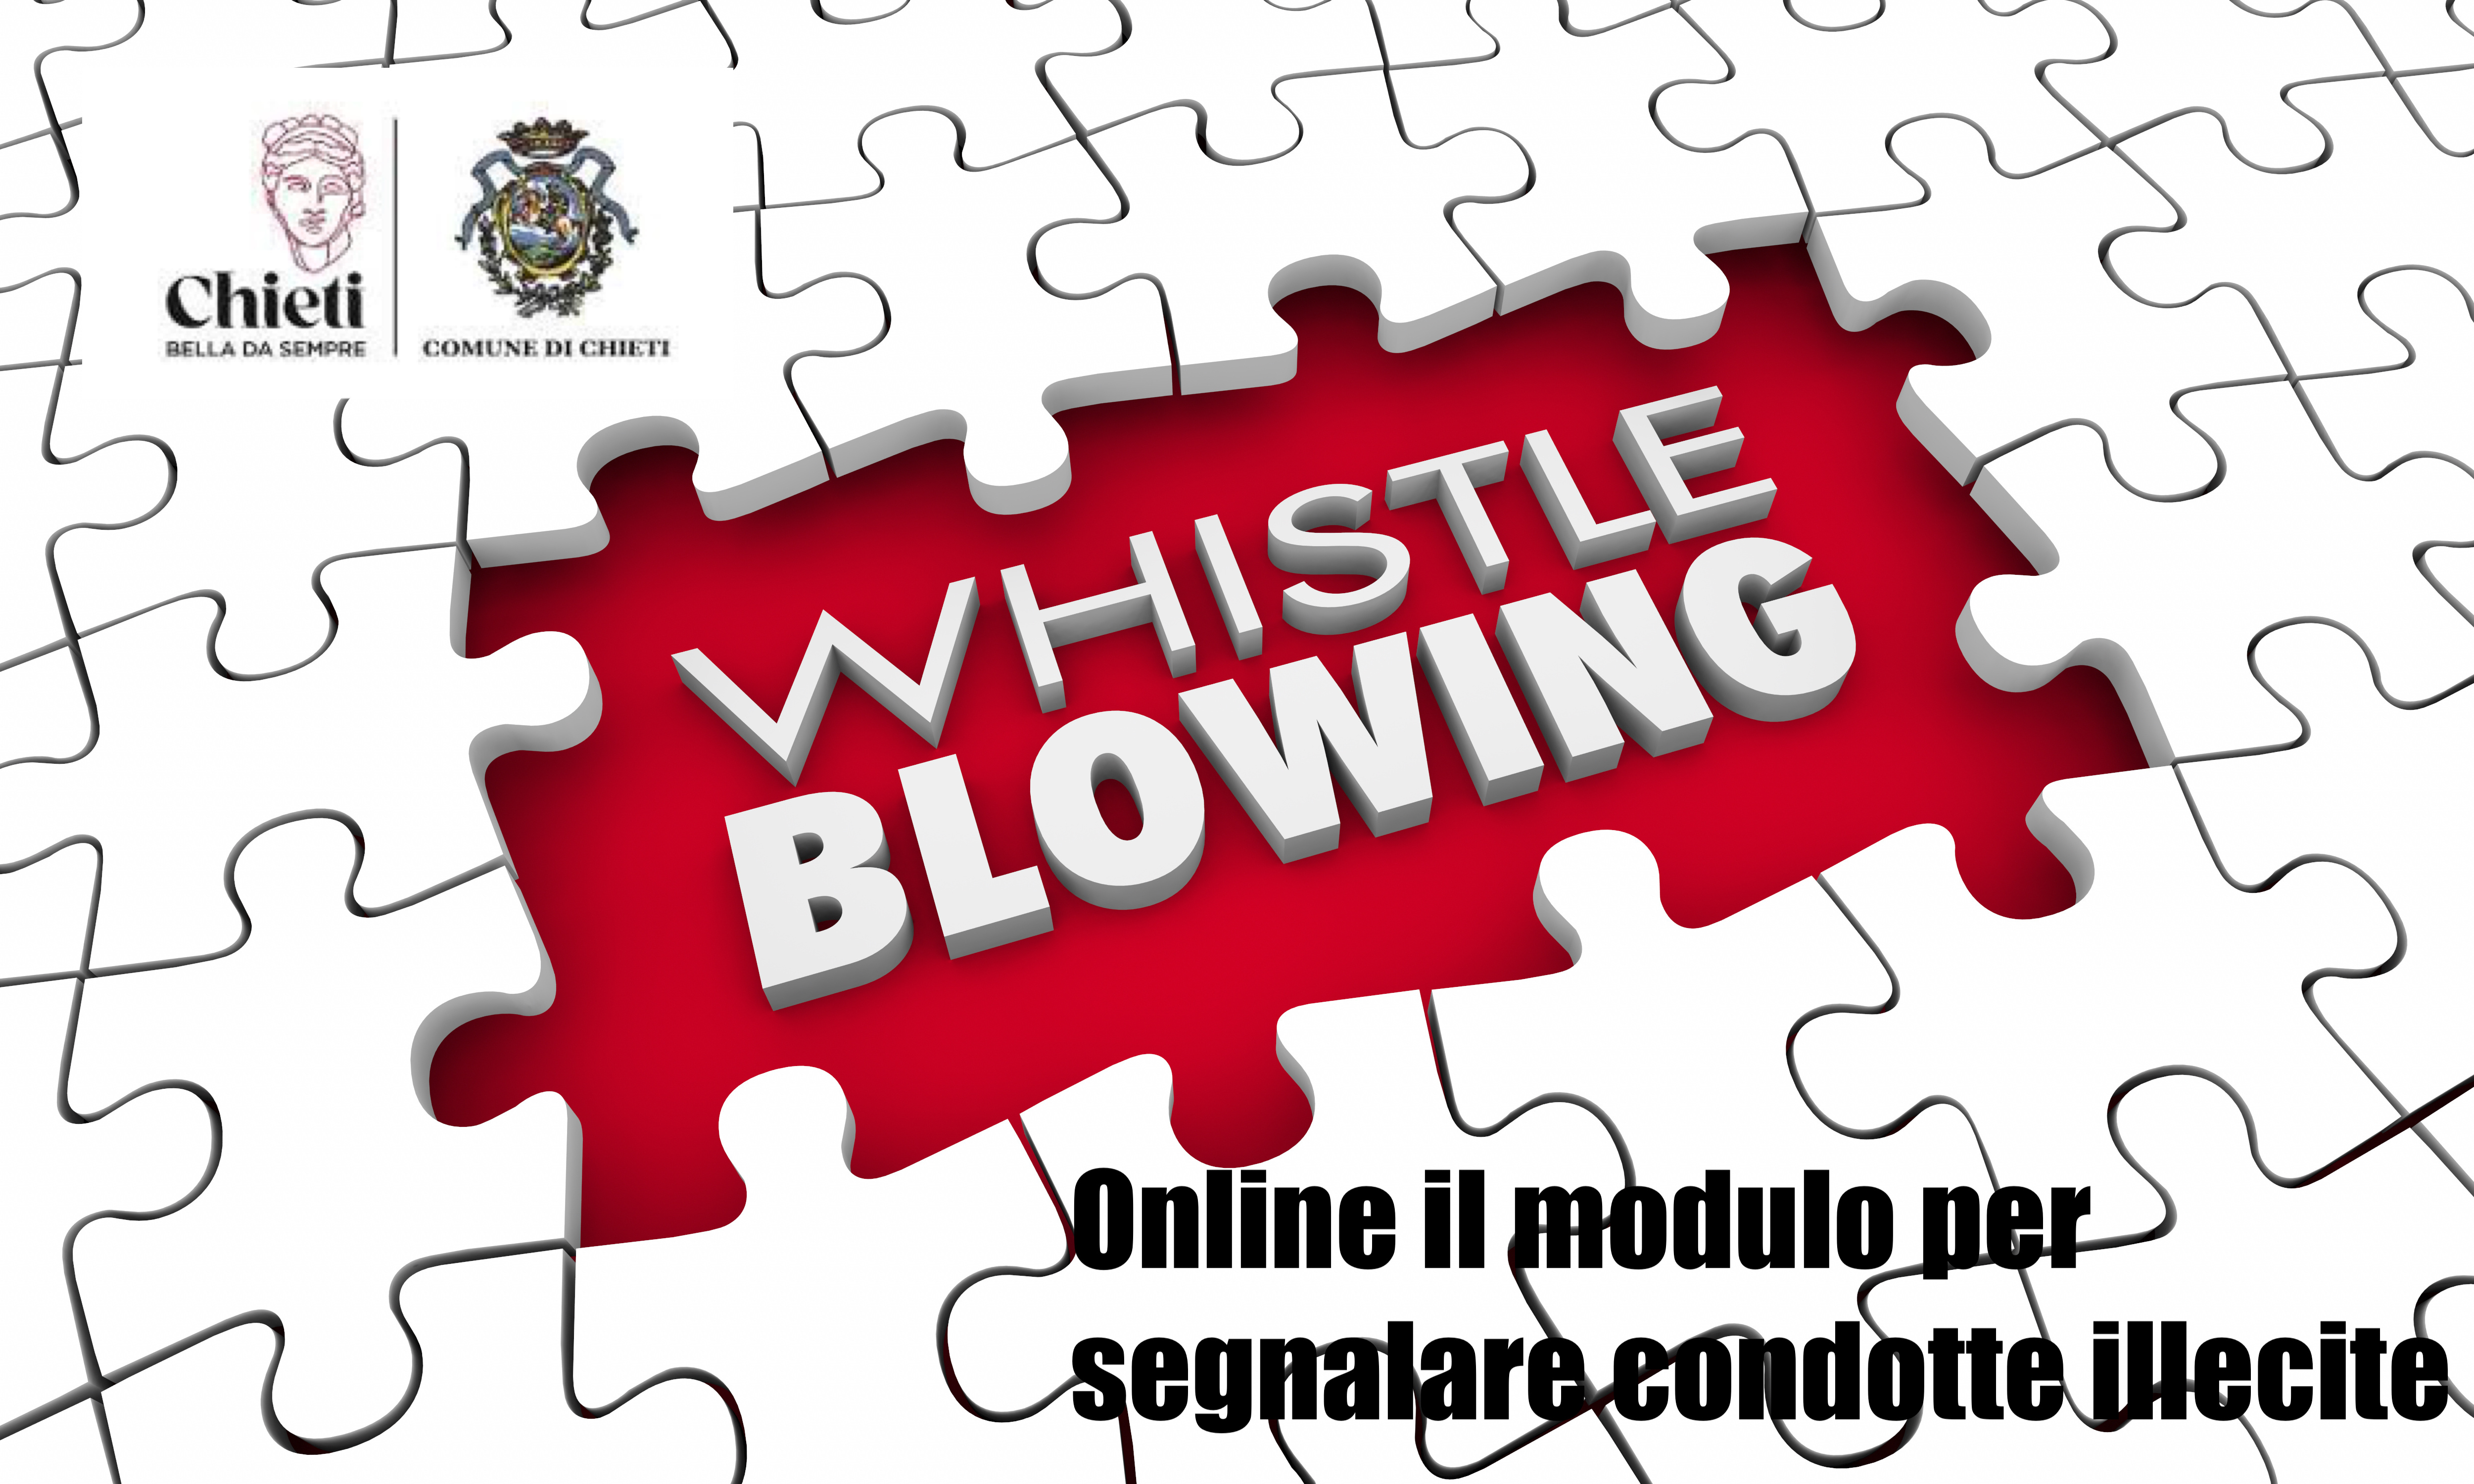 Immagine raffigurante notizia - Whistleblowing - Modulo per la segnalazione di condotte illecite ai sensi del decreto legislativo n. 24/2023